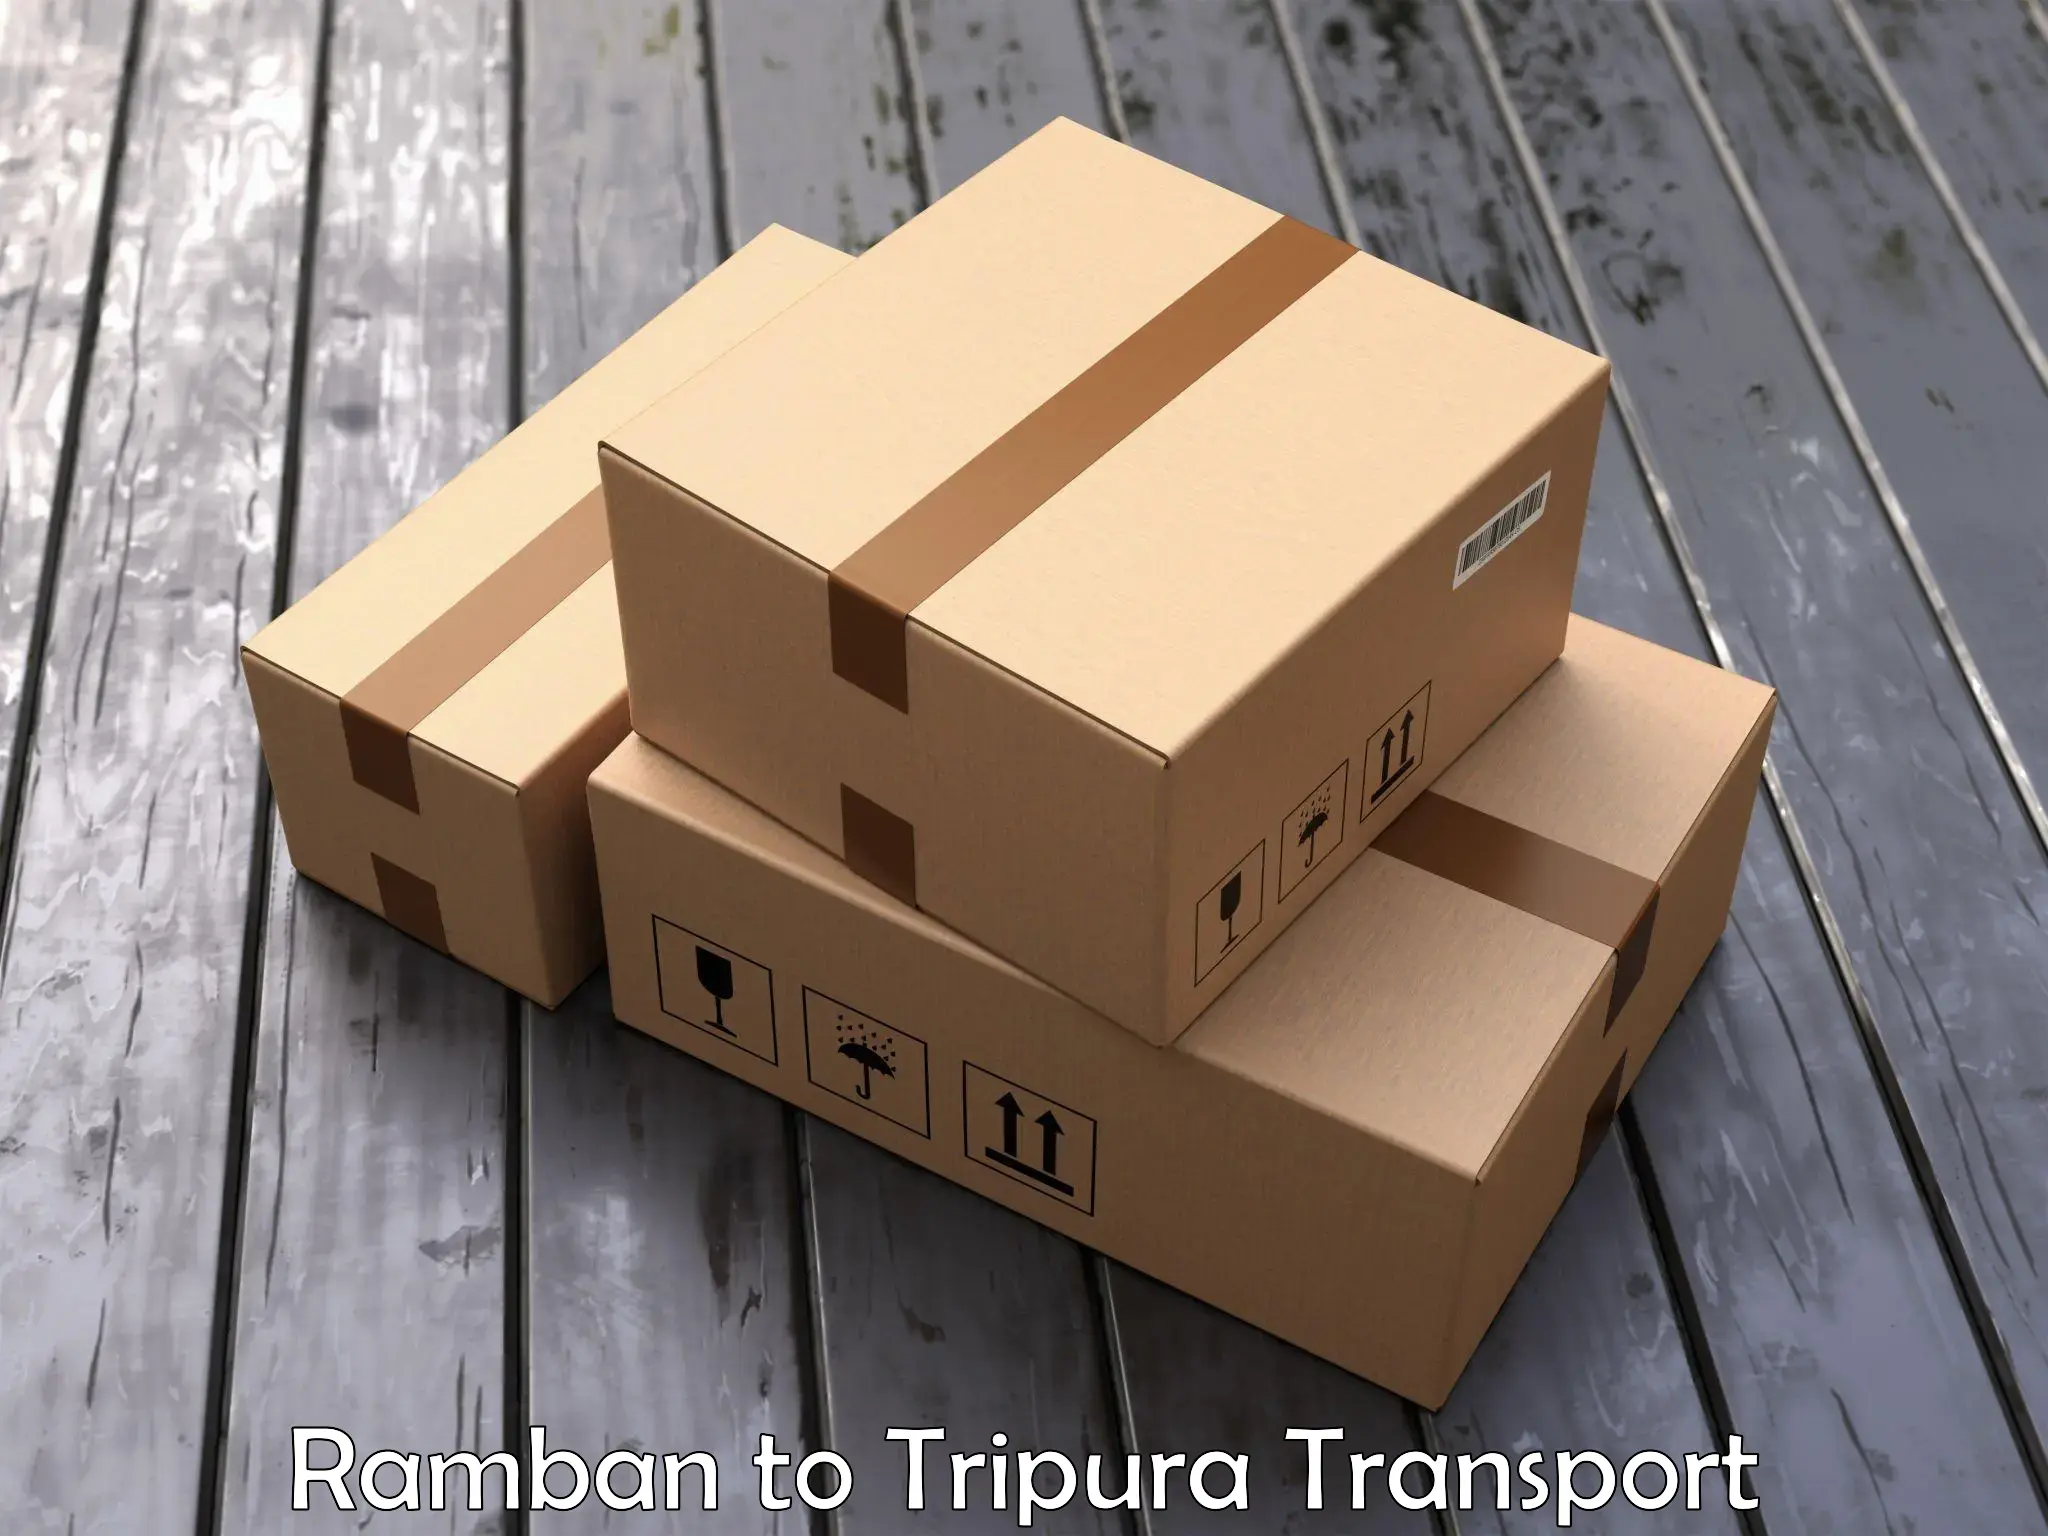 Transport in sharing in Ramban to Udaipur Tripura